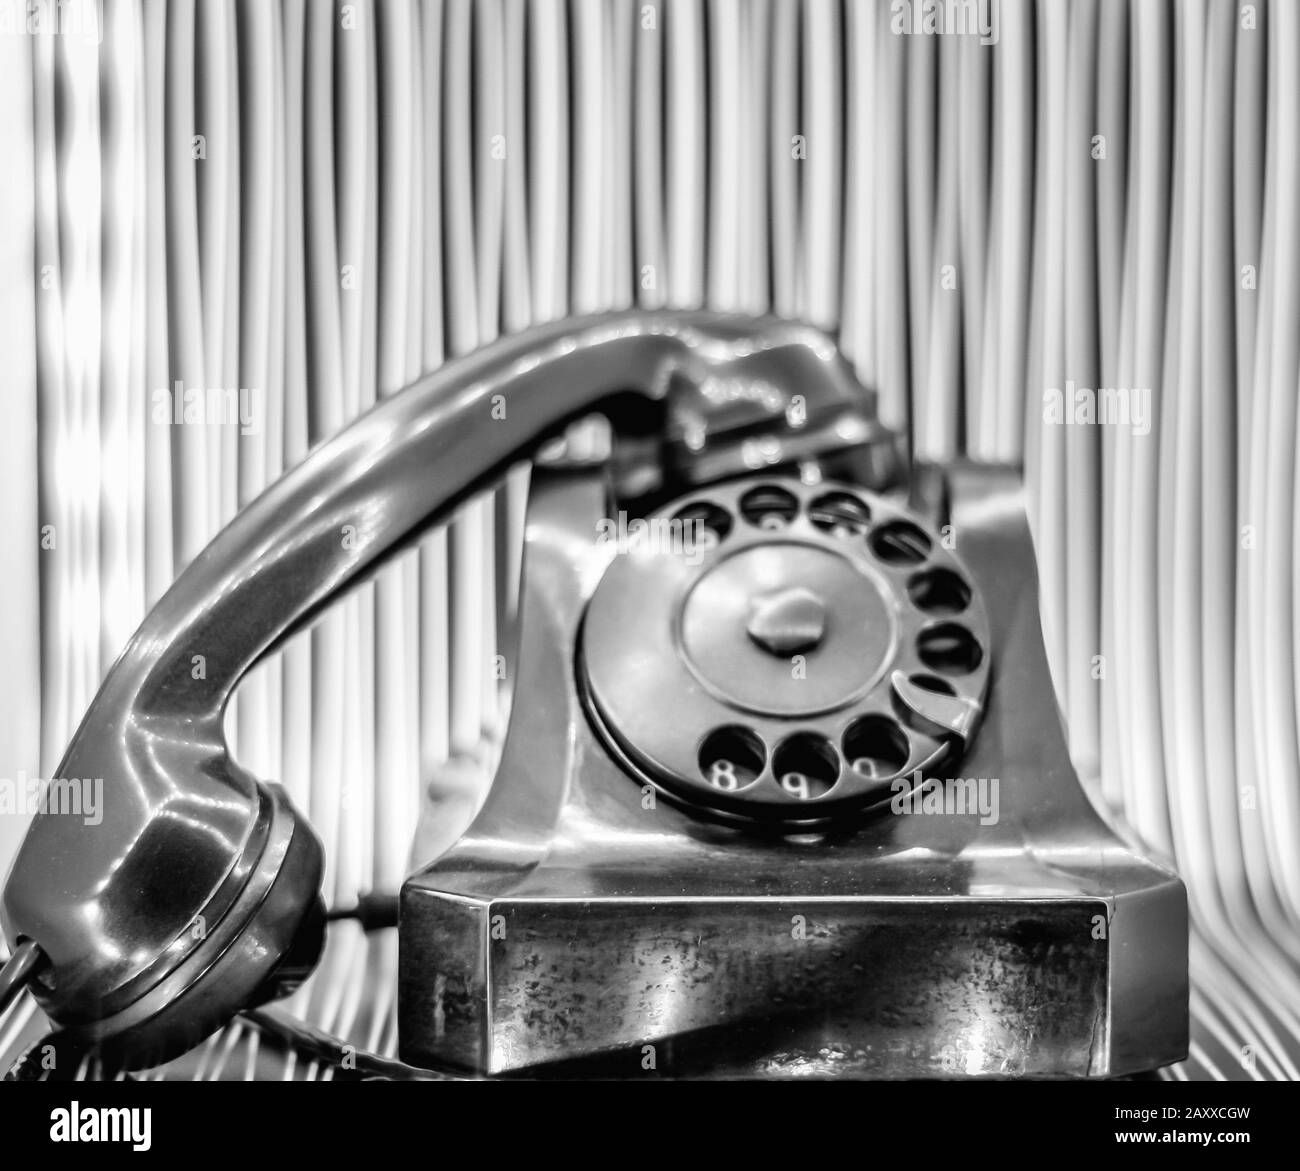 vieux téléphone à l'ancienne,fond blanc,vieux téléphone,fond,ancien,téléphone,blanc,vieilli,ancien,ancien,appareil,noir,professionnel,appel,classique,communicat Banque D'Images